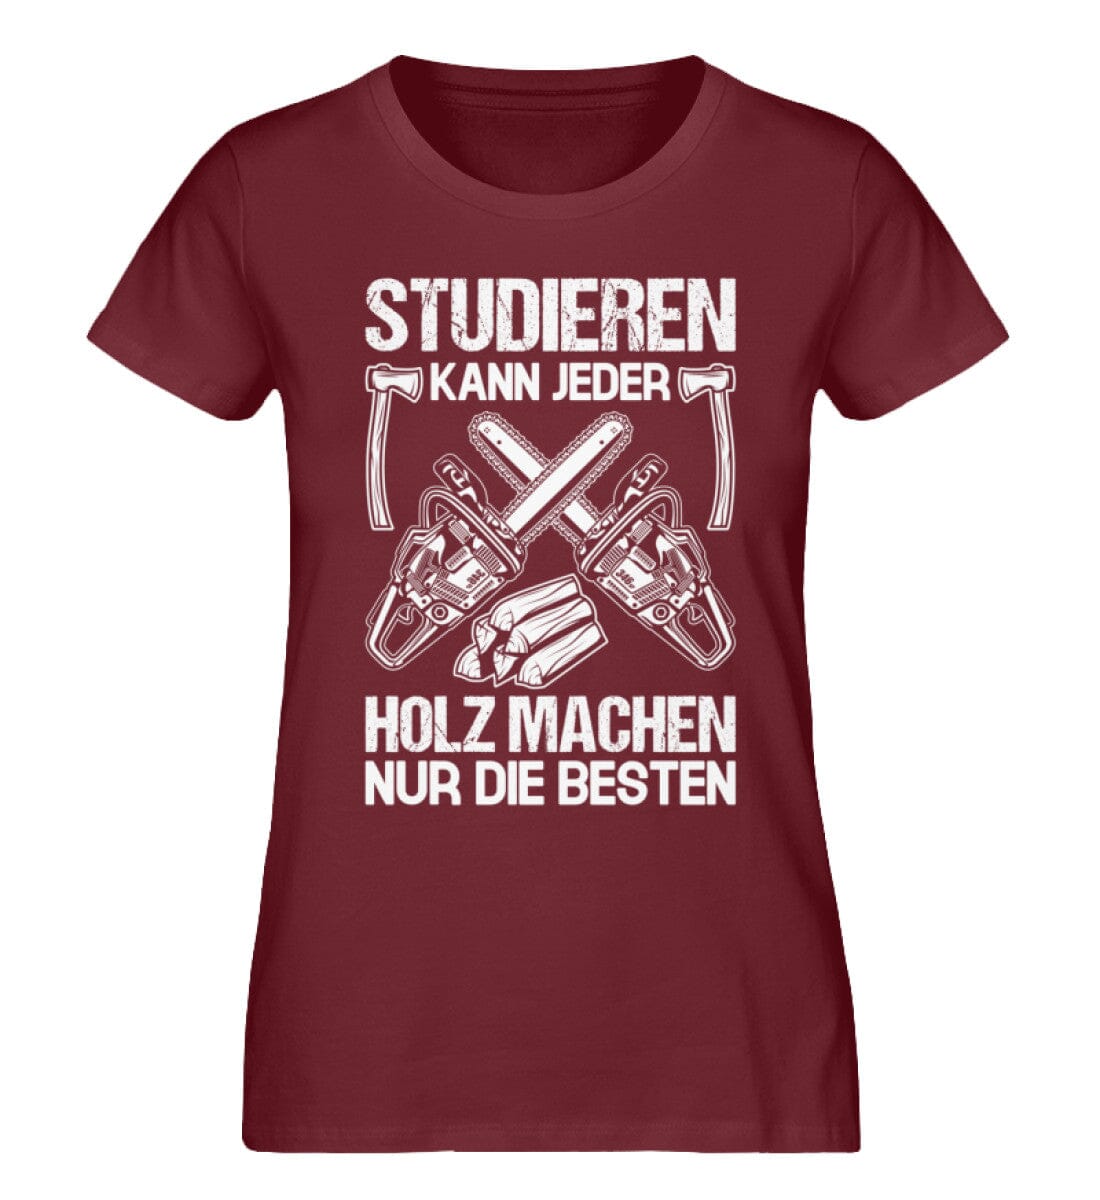 STUDIEREN KANN JEDER - Damen Premium Bio Shirt Burgundy S 